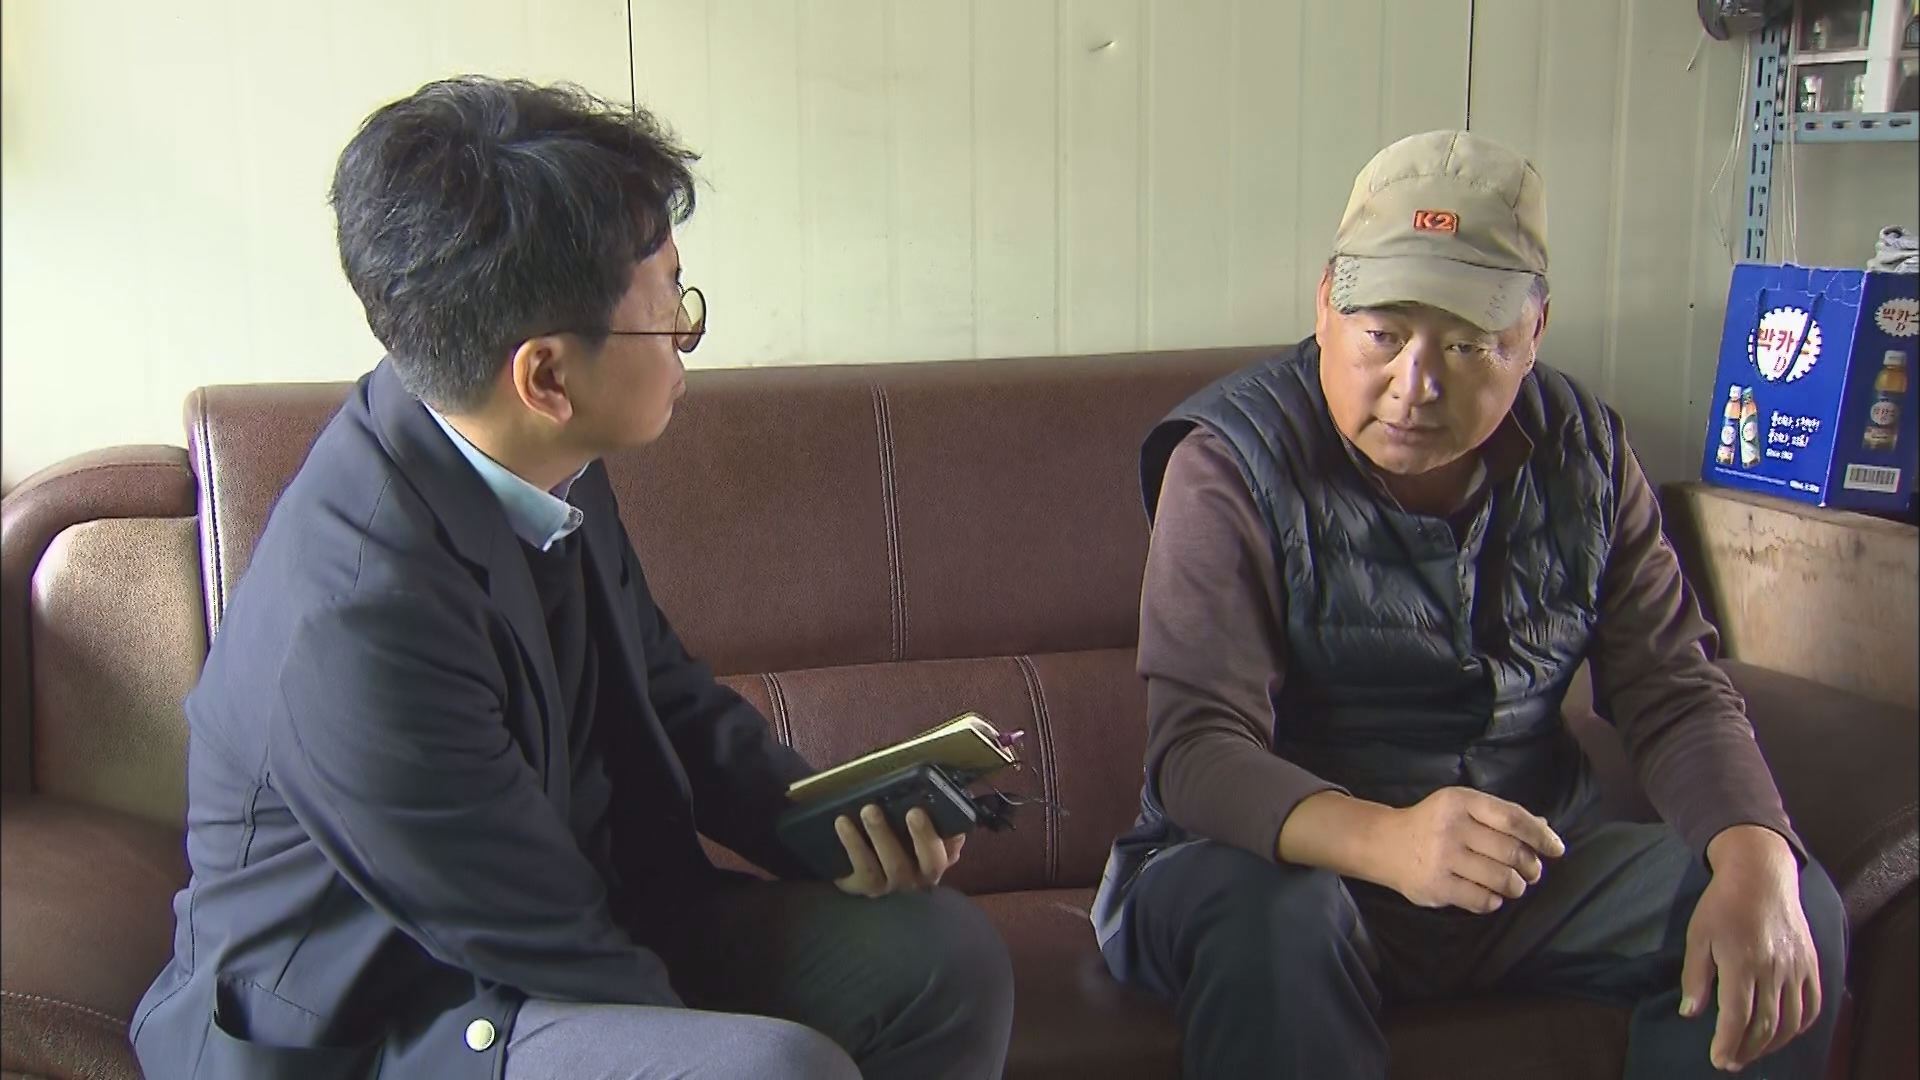 KBS 취재진이 강원도 속초에서 탈북민을 만난 사람을 인터뷰하고 있다.(촬영기자 : 박영웅)